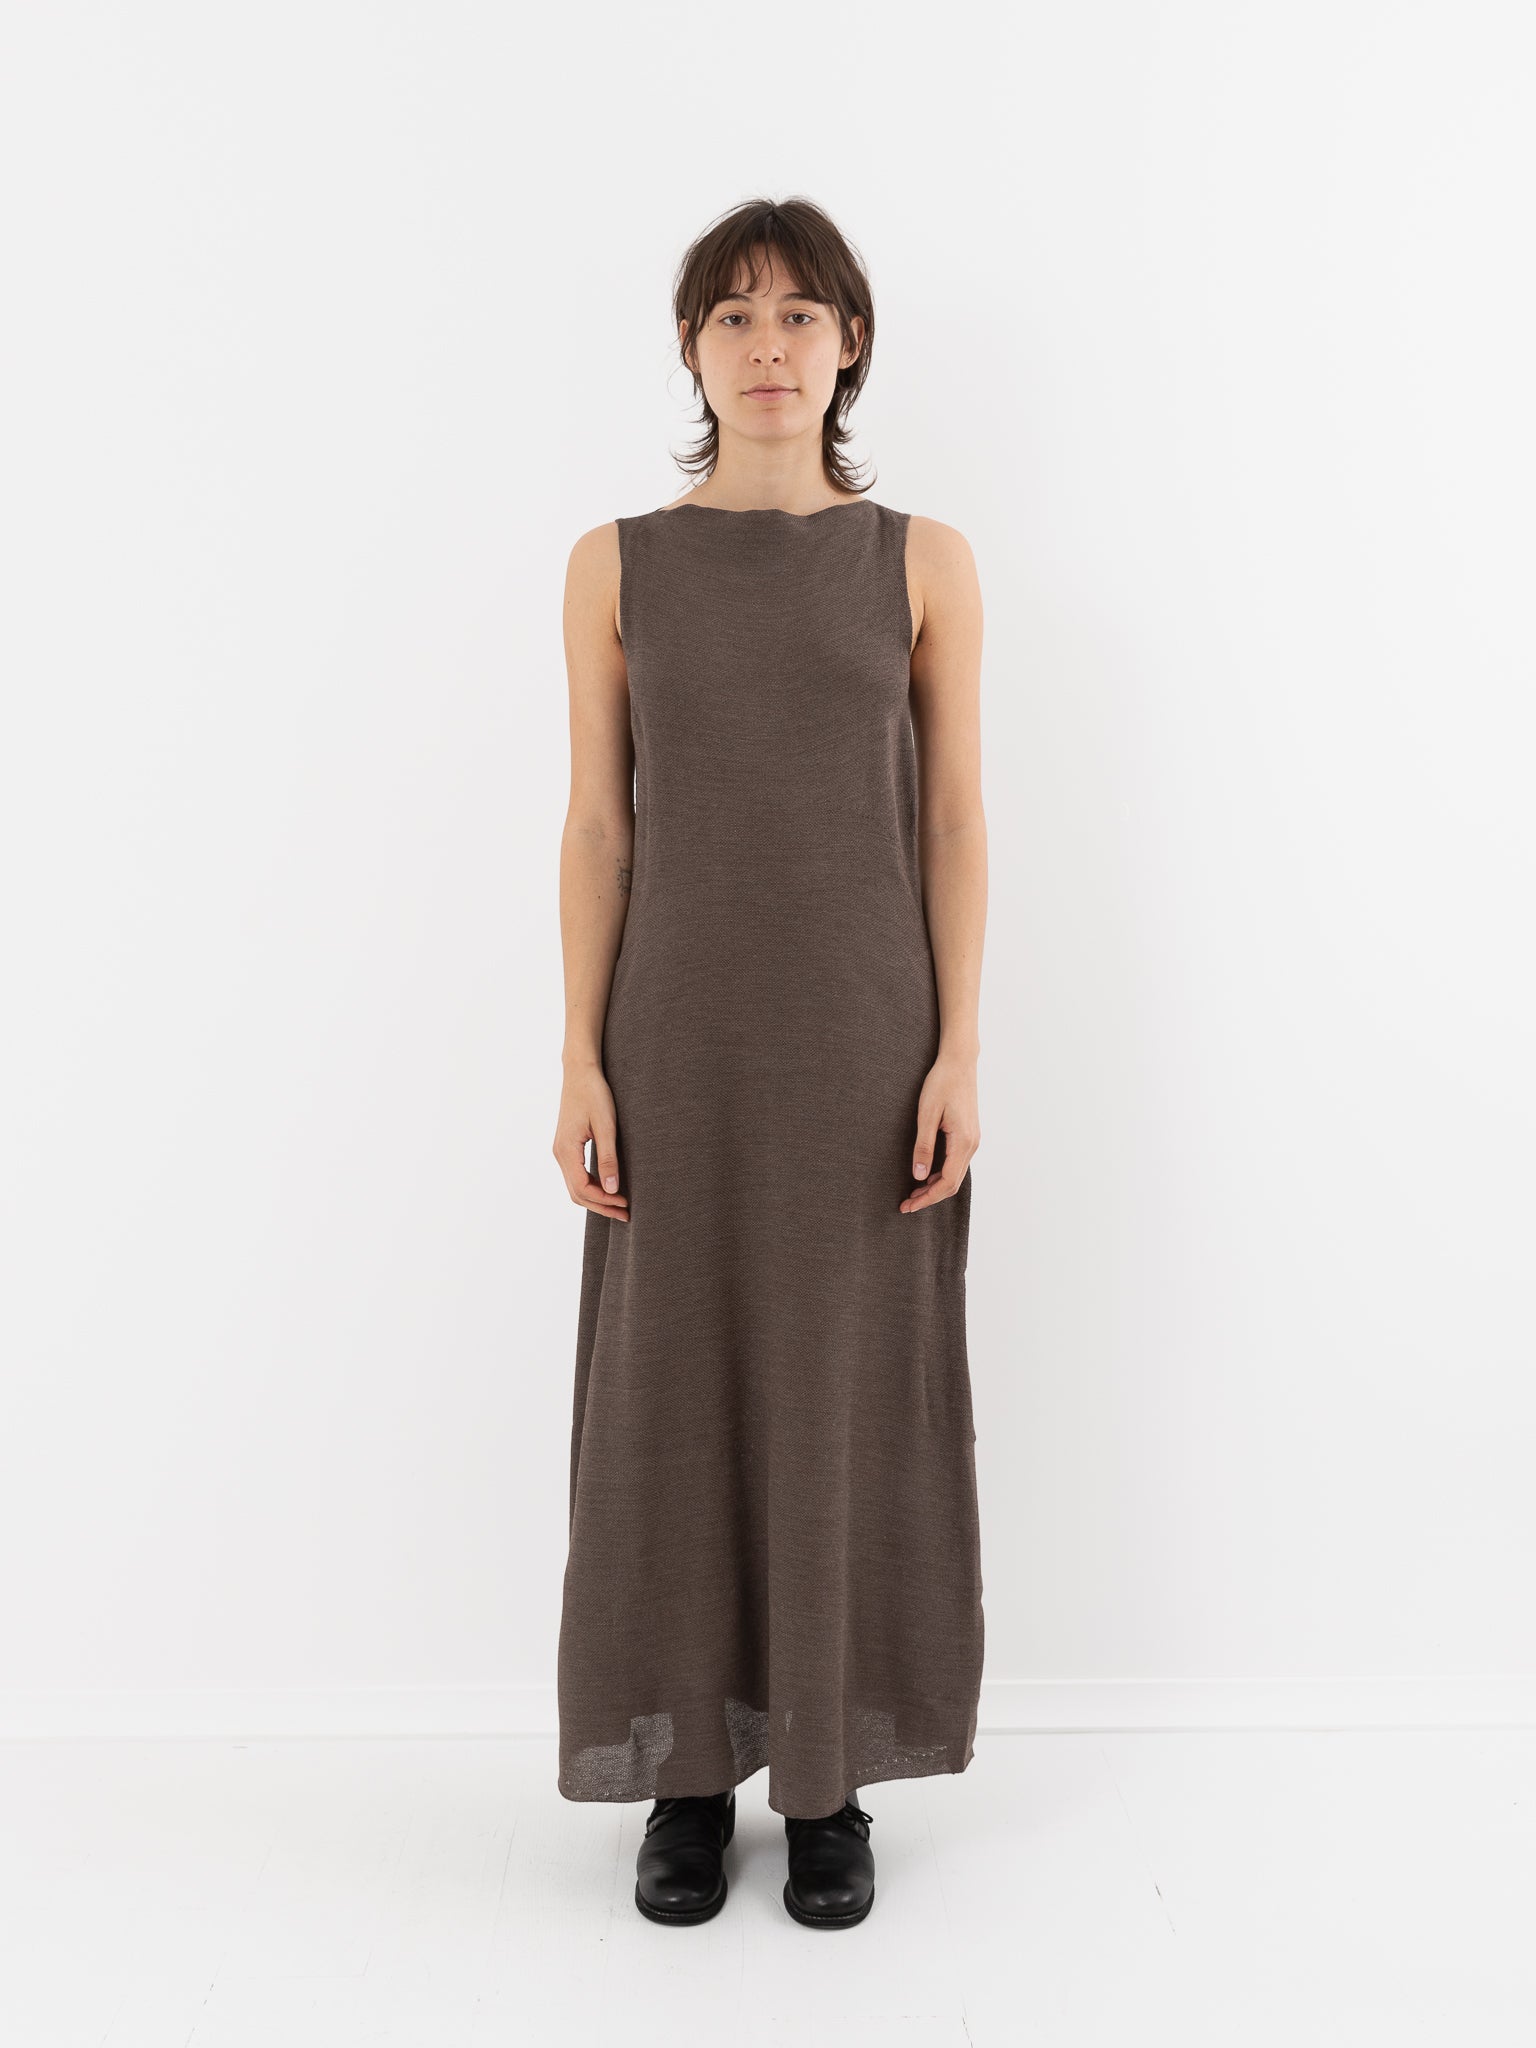 Boboutic Sleeveless Dress, Dark Taupe - Worthwhile, Inc.